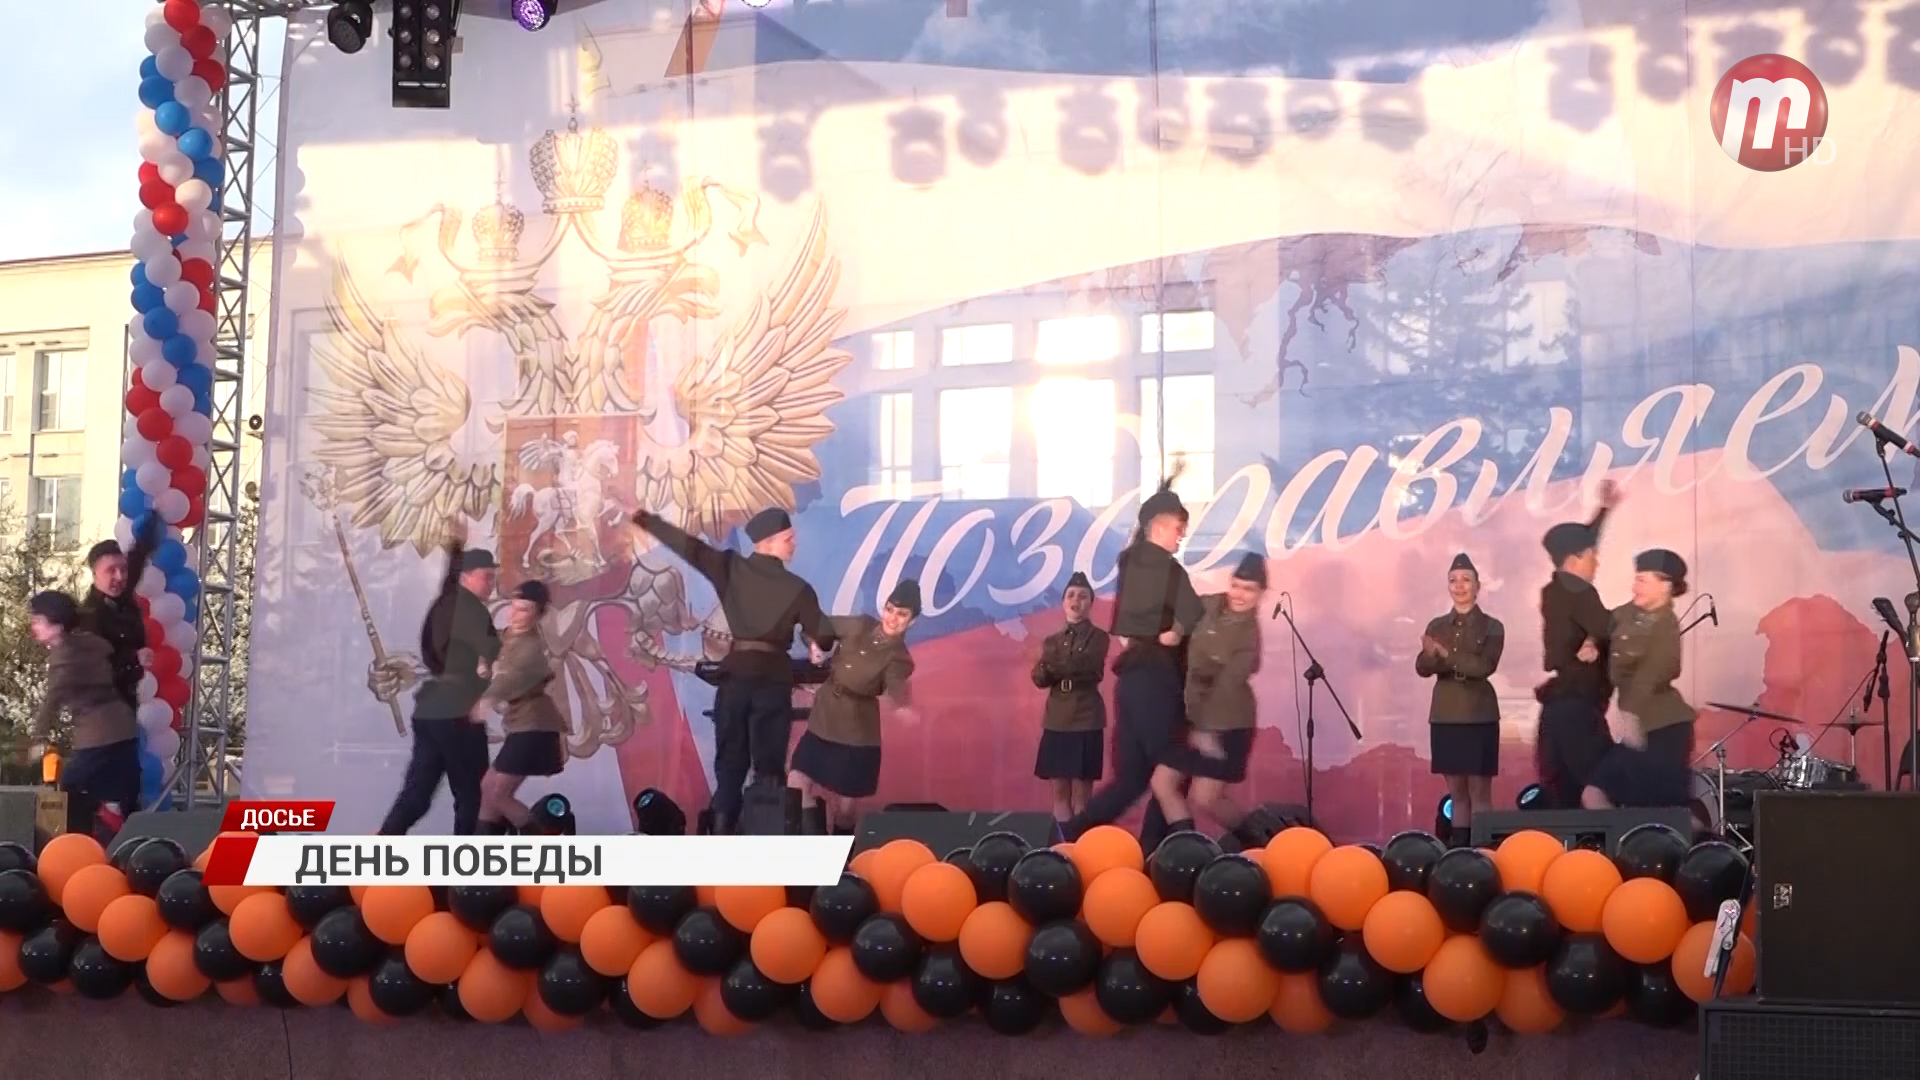 Улан-Удэ масштабно отпразднует День Победы